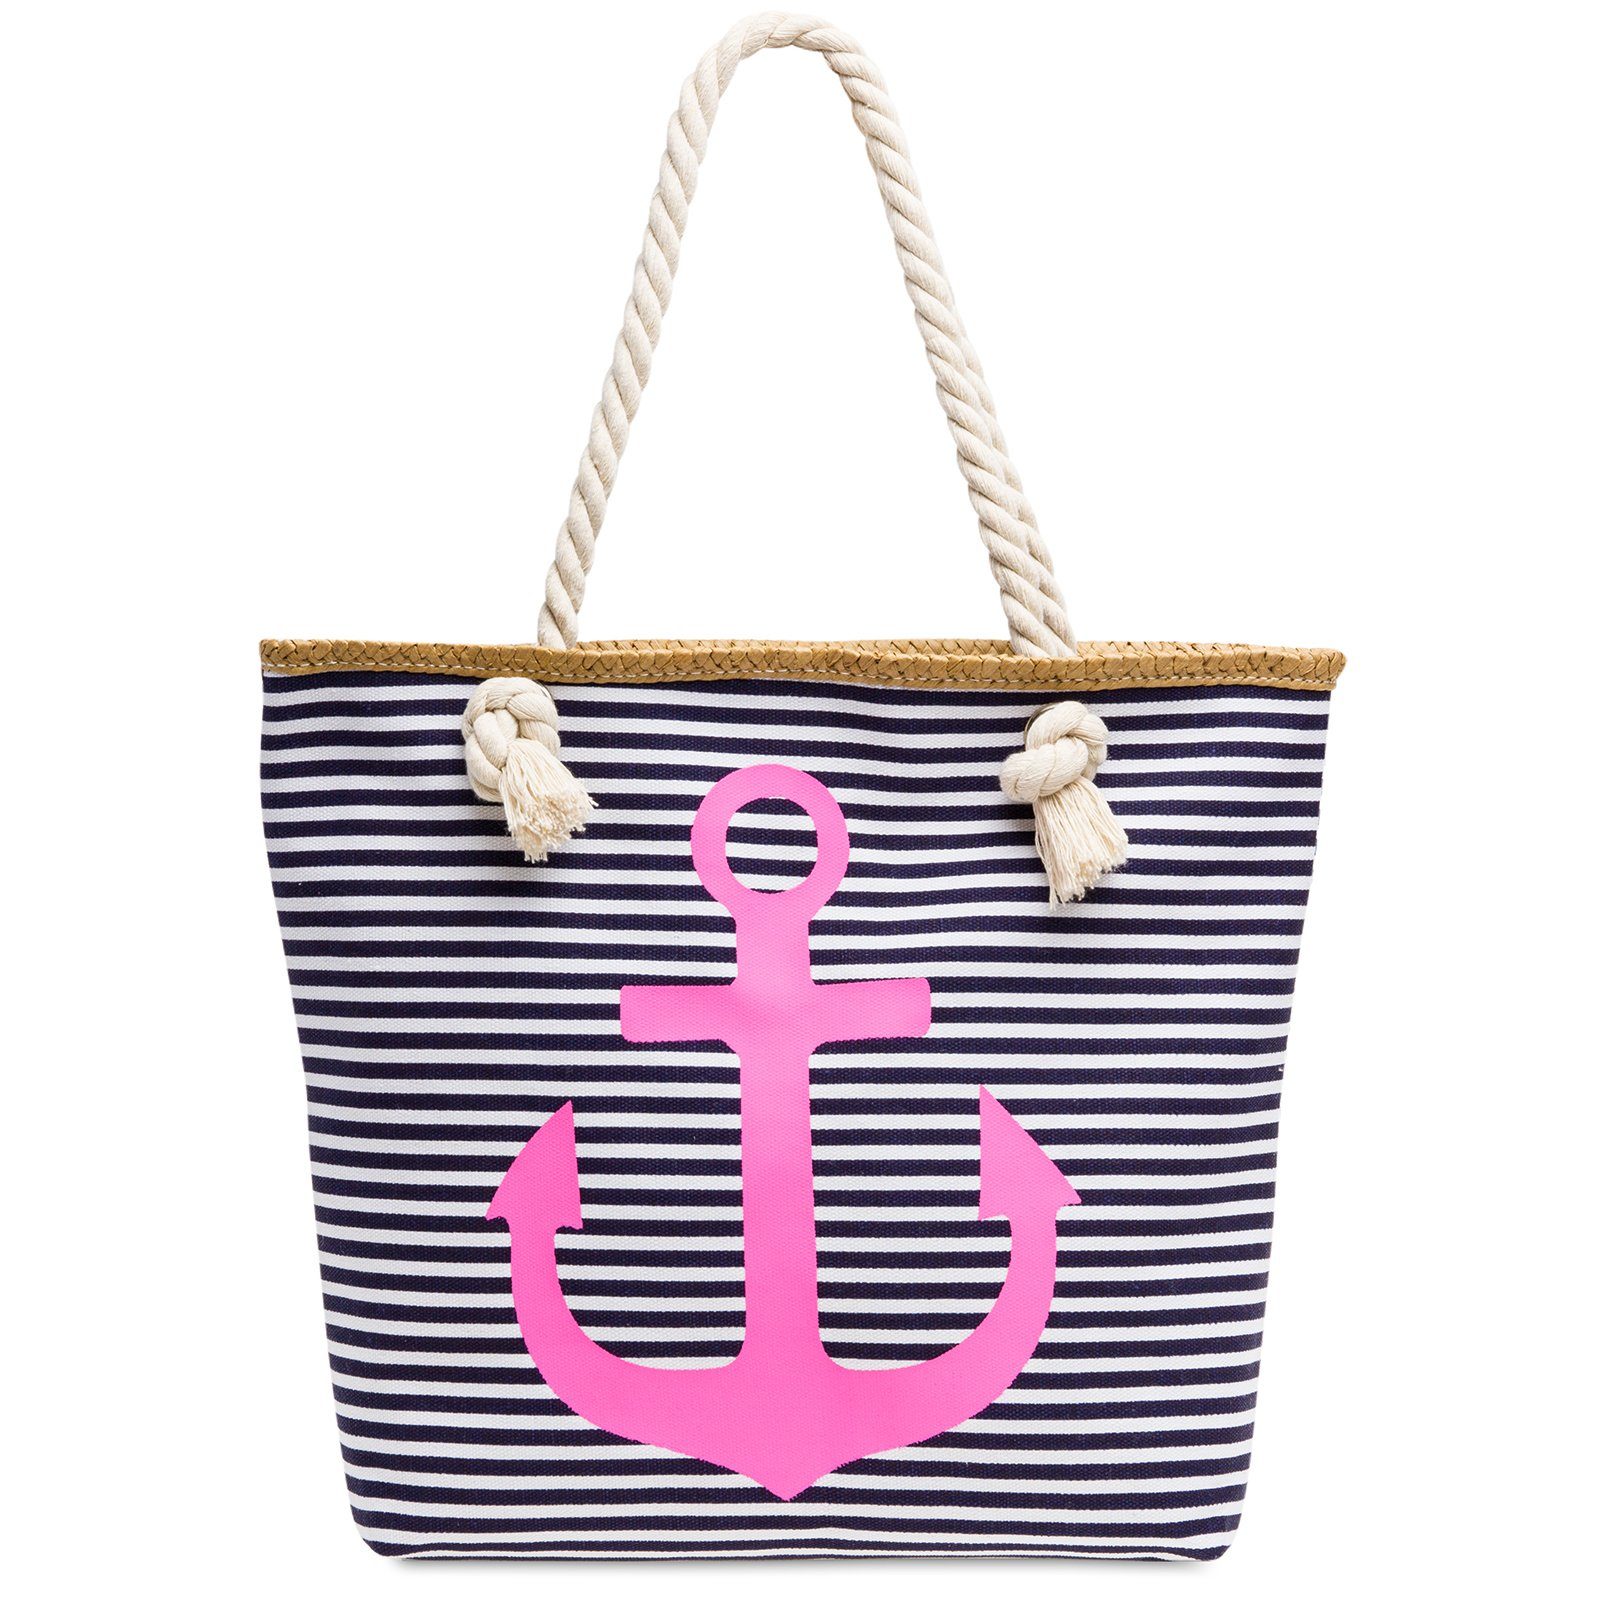 Caspar Strandtasche TS1040 Damen - mit / maritimen dunkelblau Streifen Reißverschluss pink Strandtasche ANKER Shopper Muster und